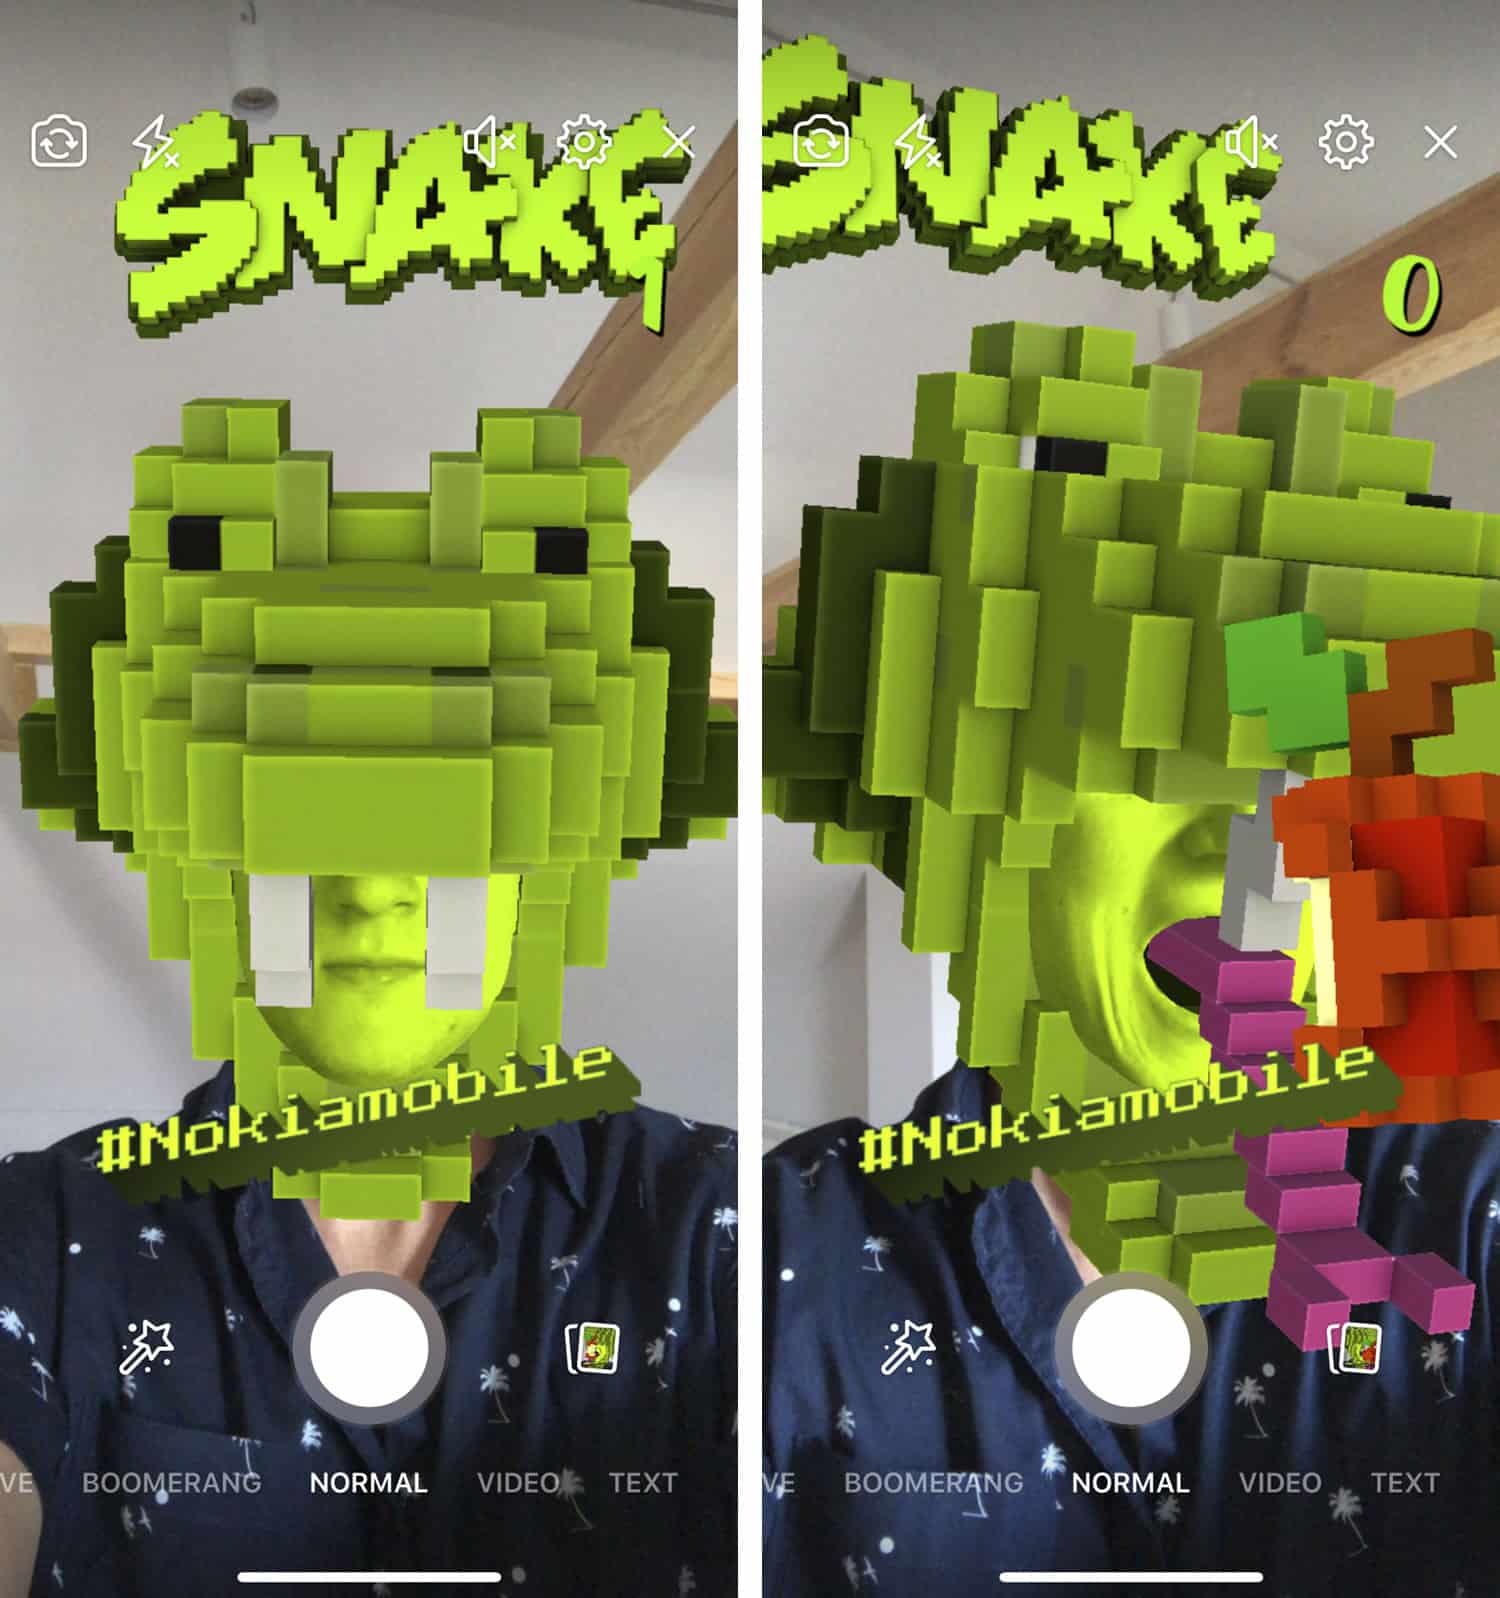 Nokia resucitó al Snake con realidad aumentada en Facebook